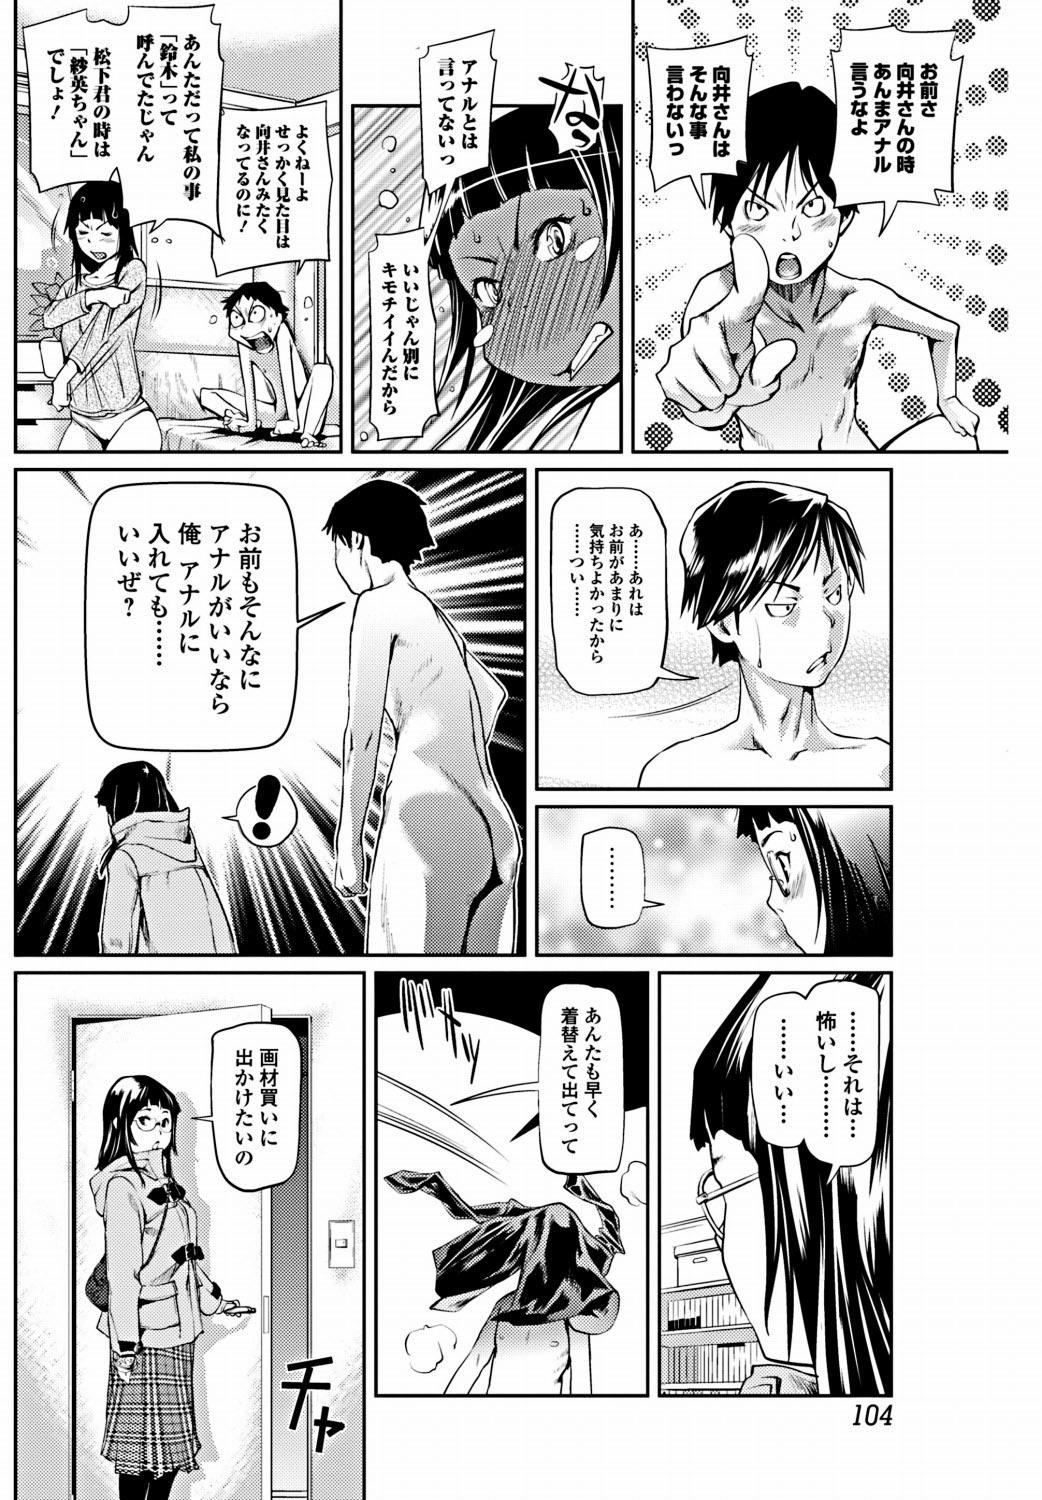 Bishoujo Kakumei KIWAME 2012-02 Vol.18 104